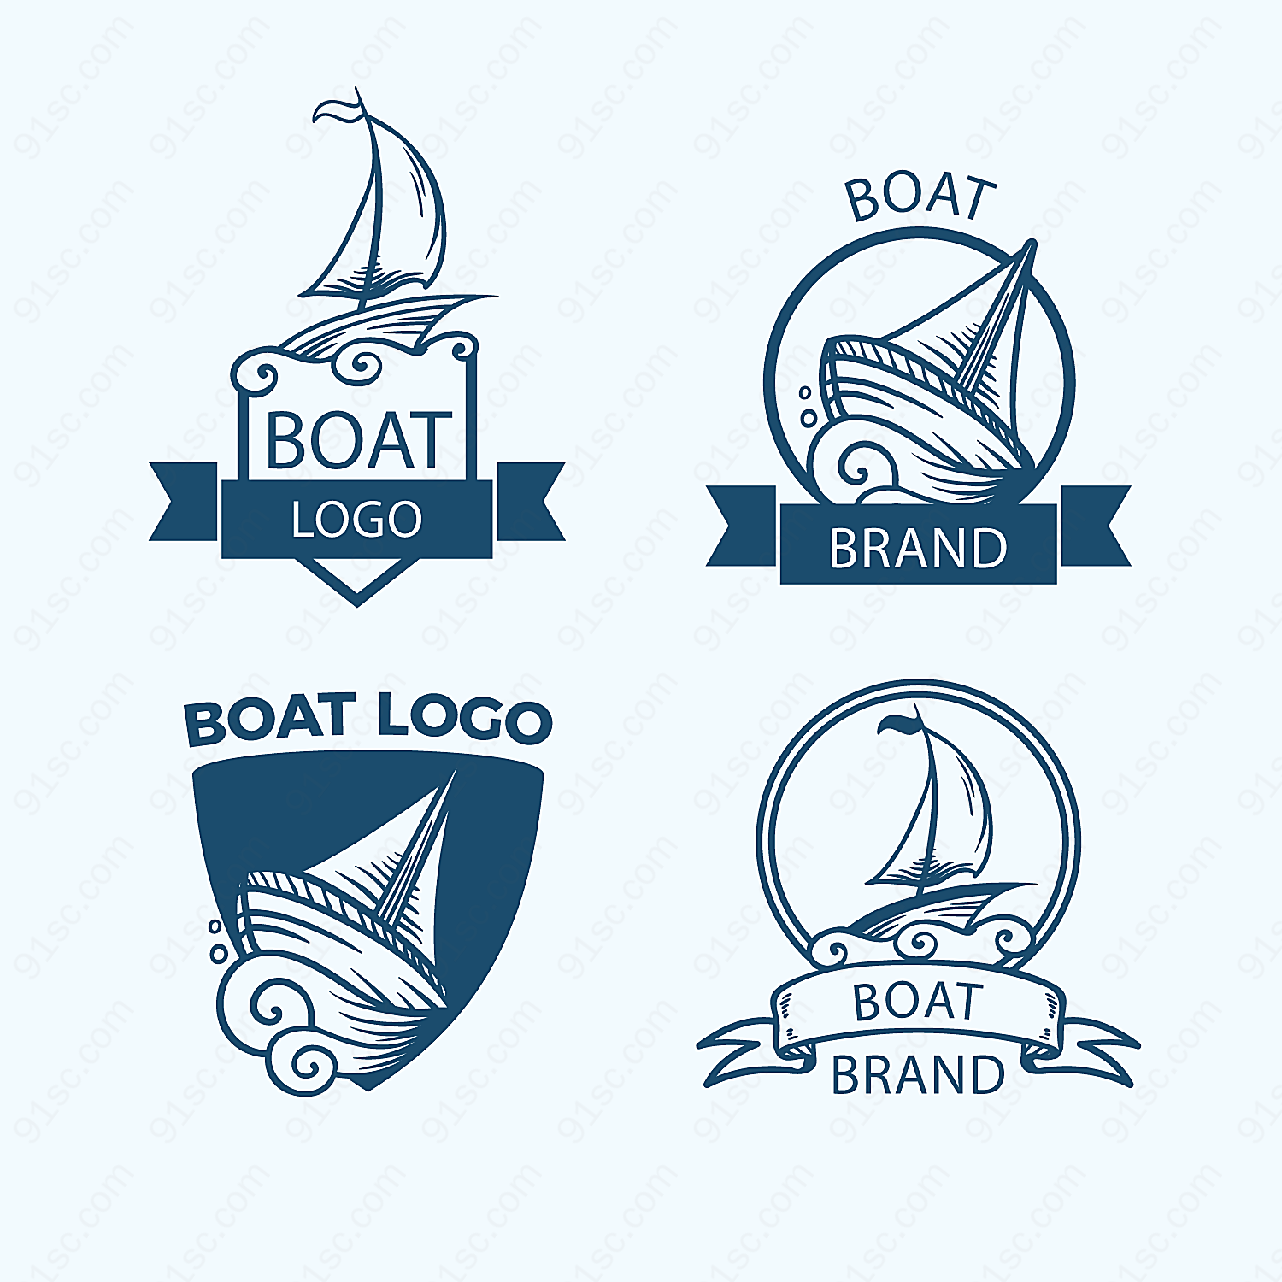 手绘船舶标志矢量logo图形